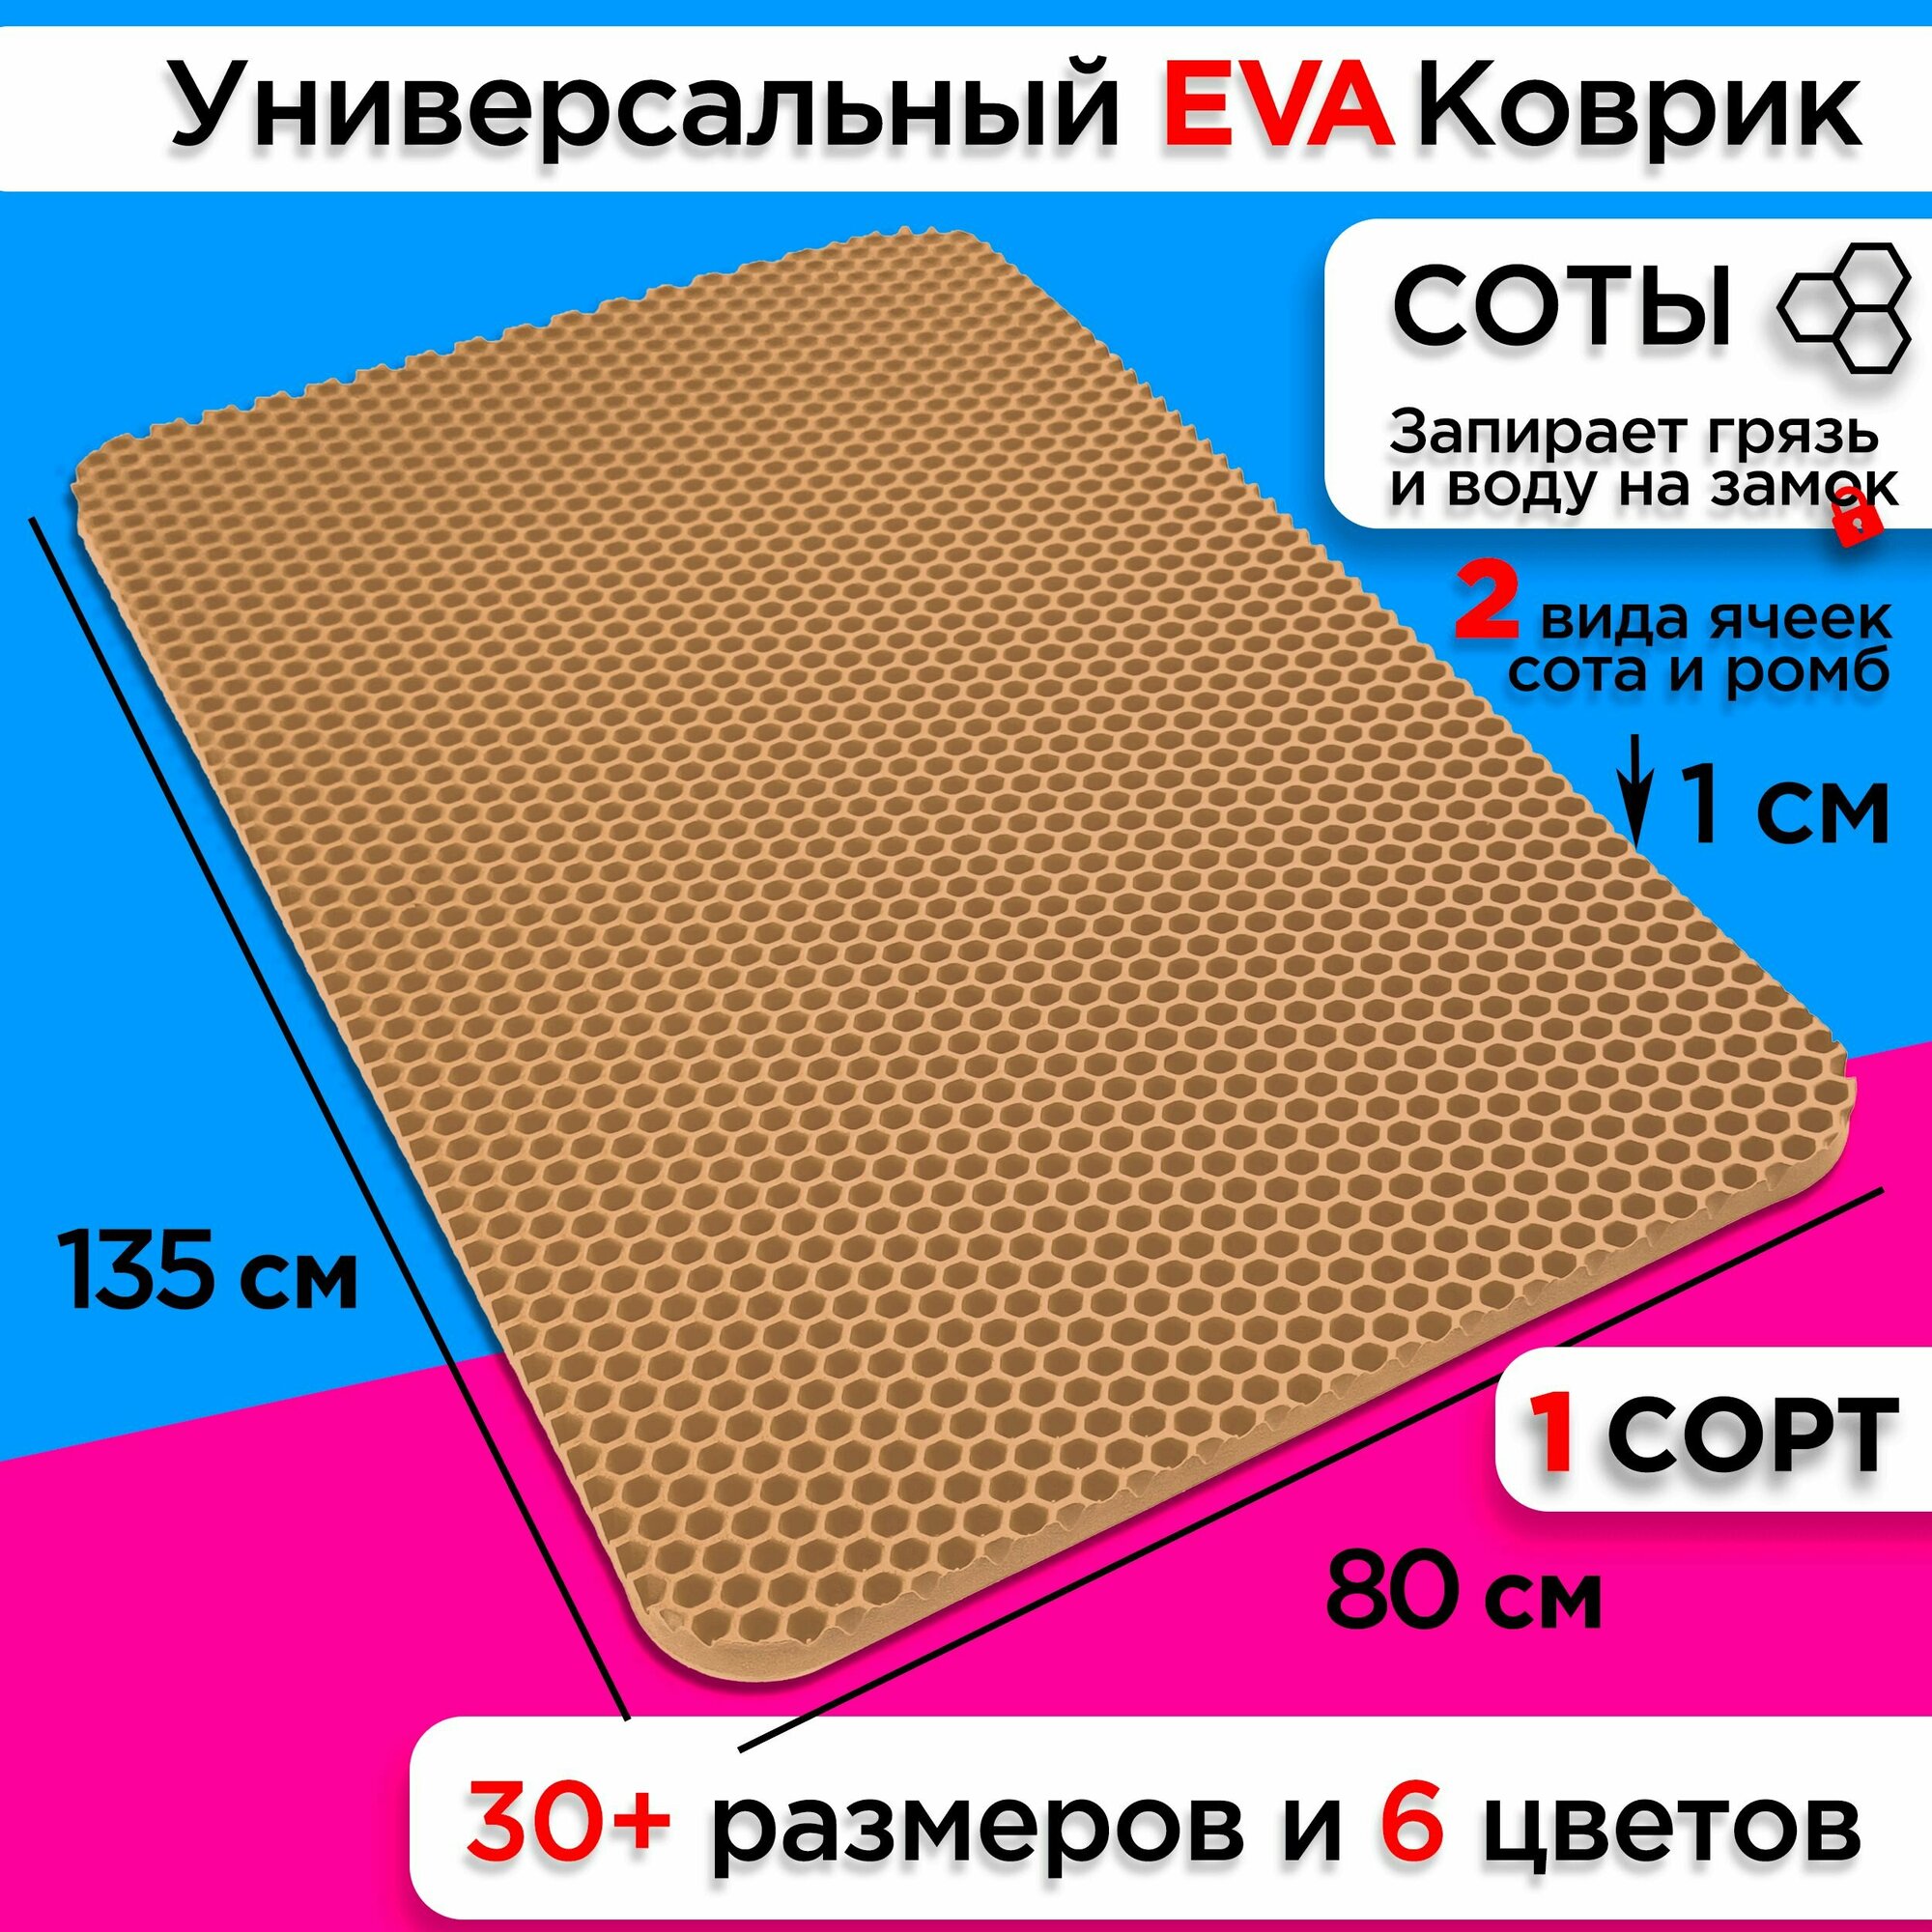 Коврик придверный EVA 135 х 80 см грязезащитный входной в прихожую износостойкий ковер на пол под обувь на кухню в шкаф